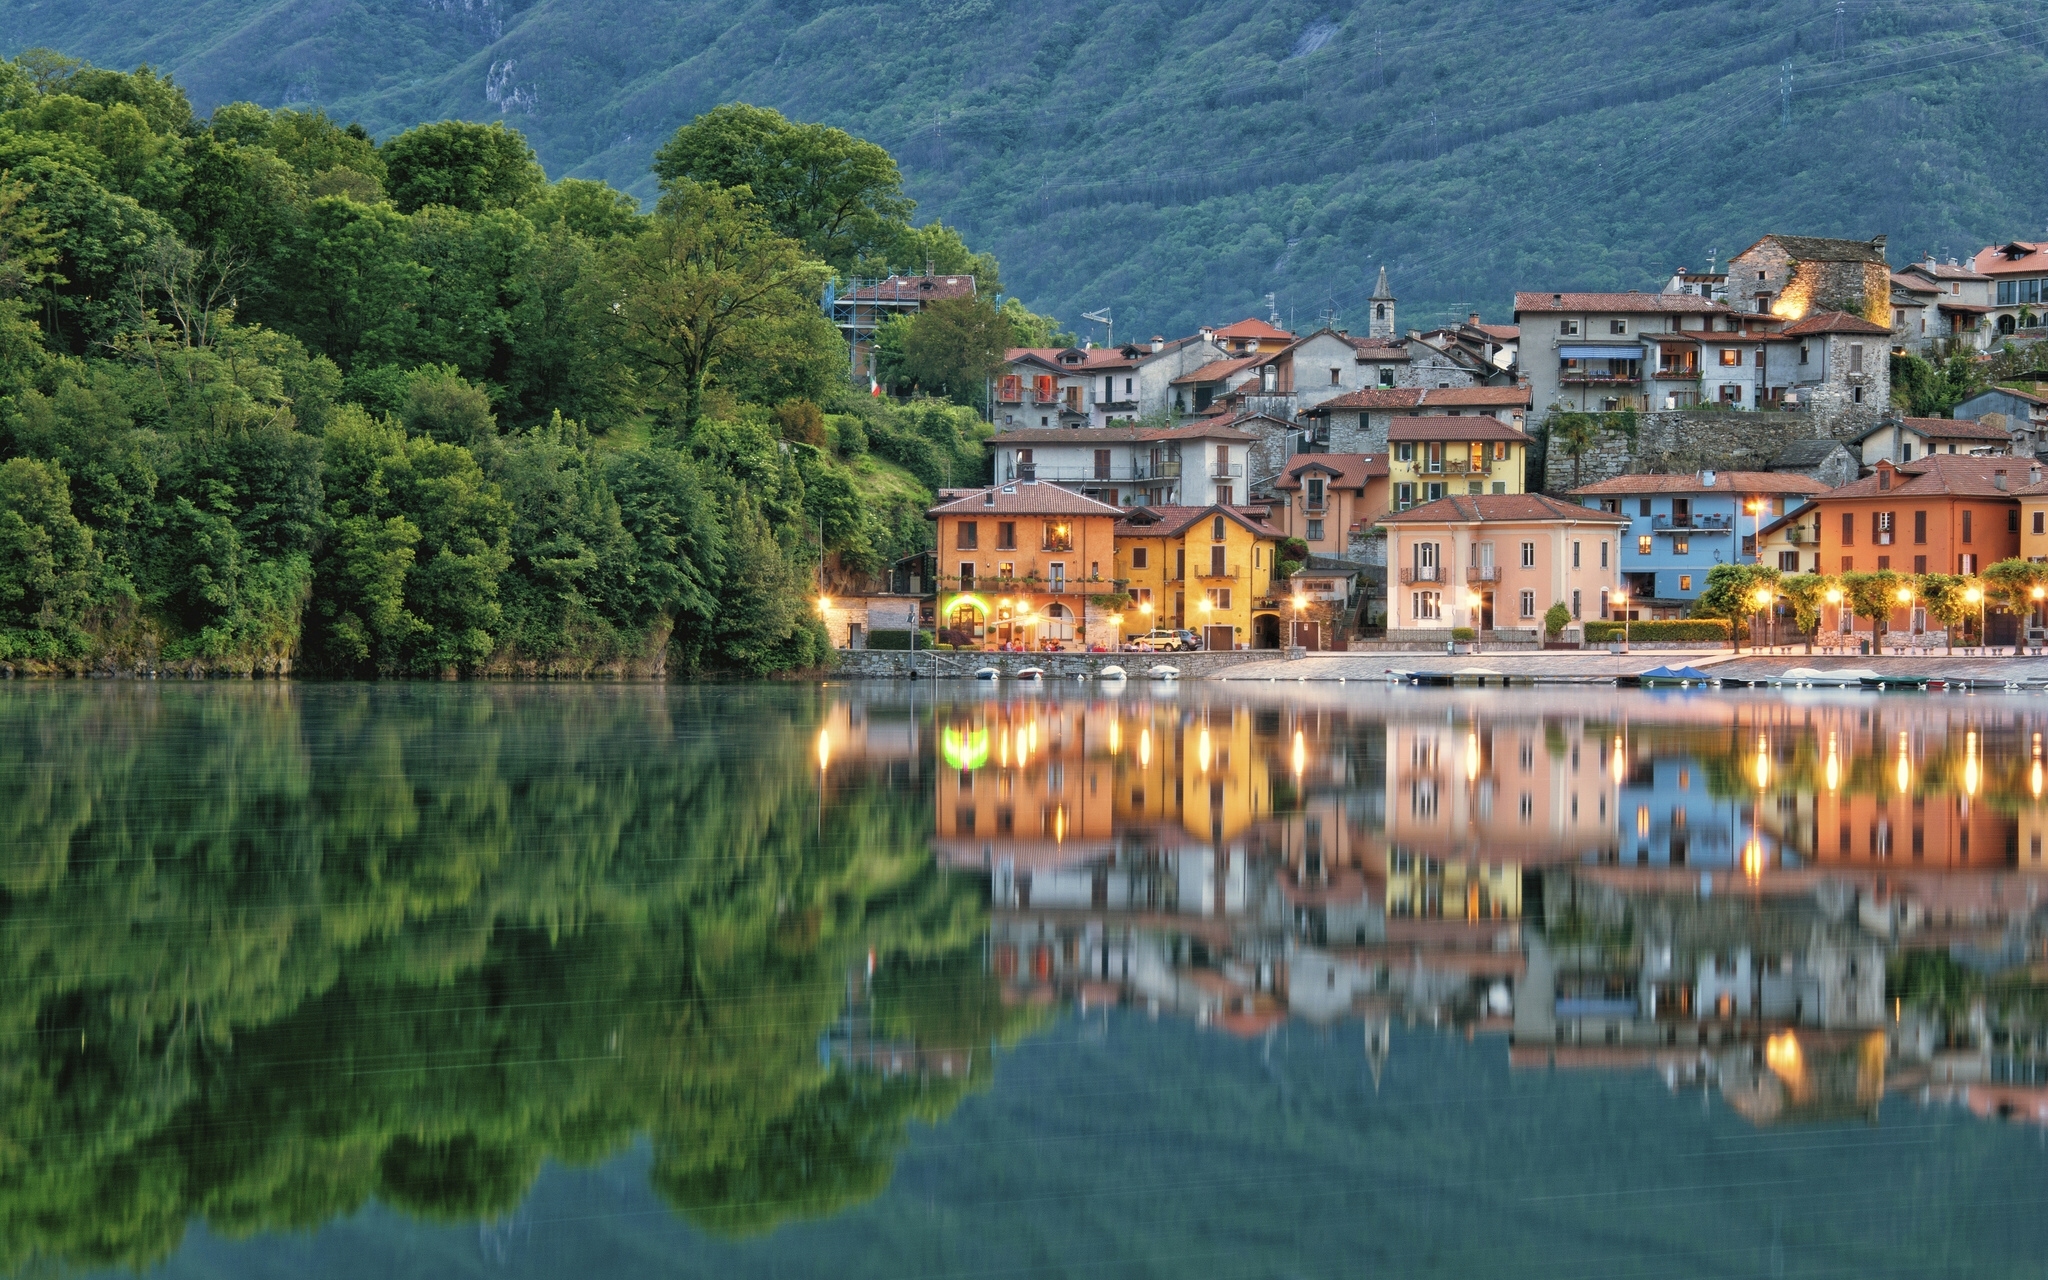 Город около гор. Город Пьемонт Италия. Озеро Комо. Италия. Италия озеро Комо набережная. Регион Пьемонт Италия.